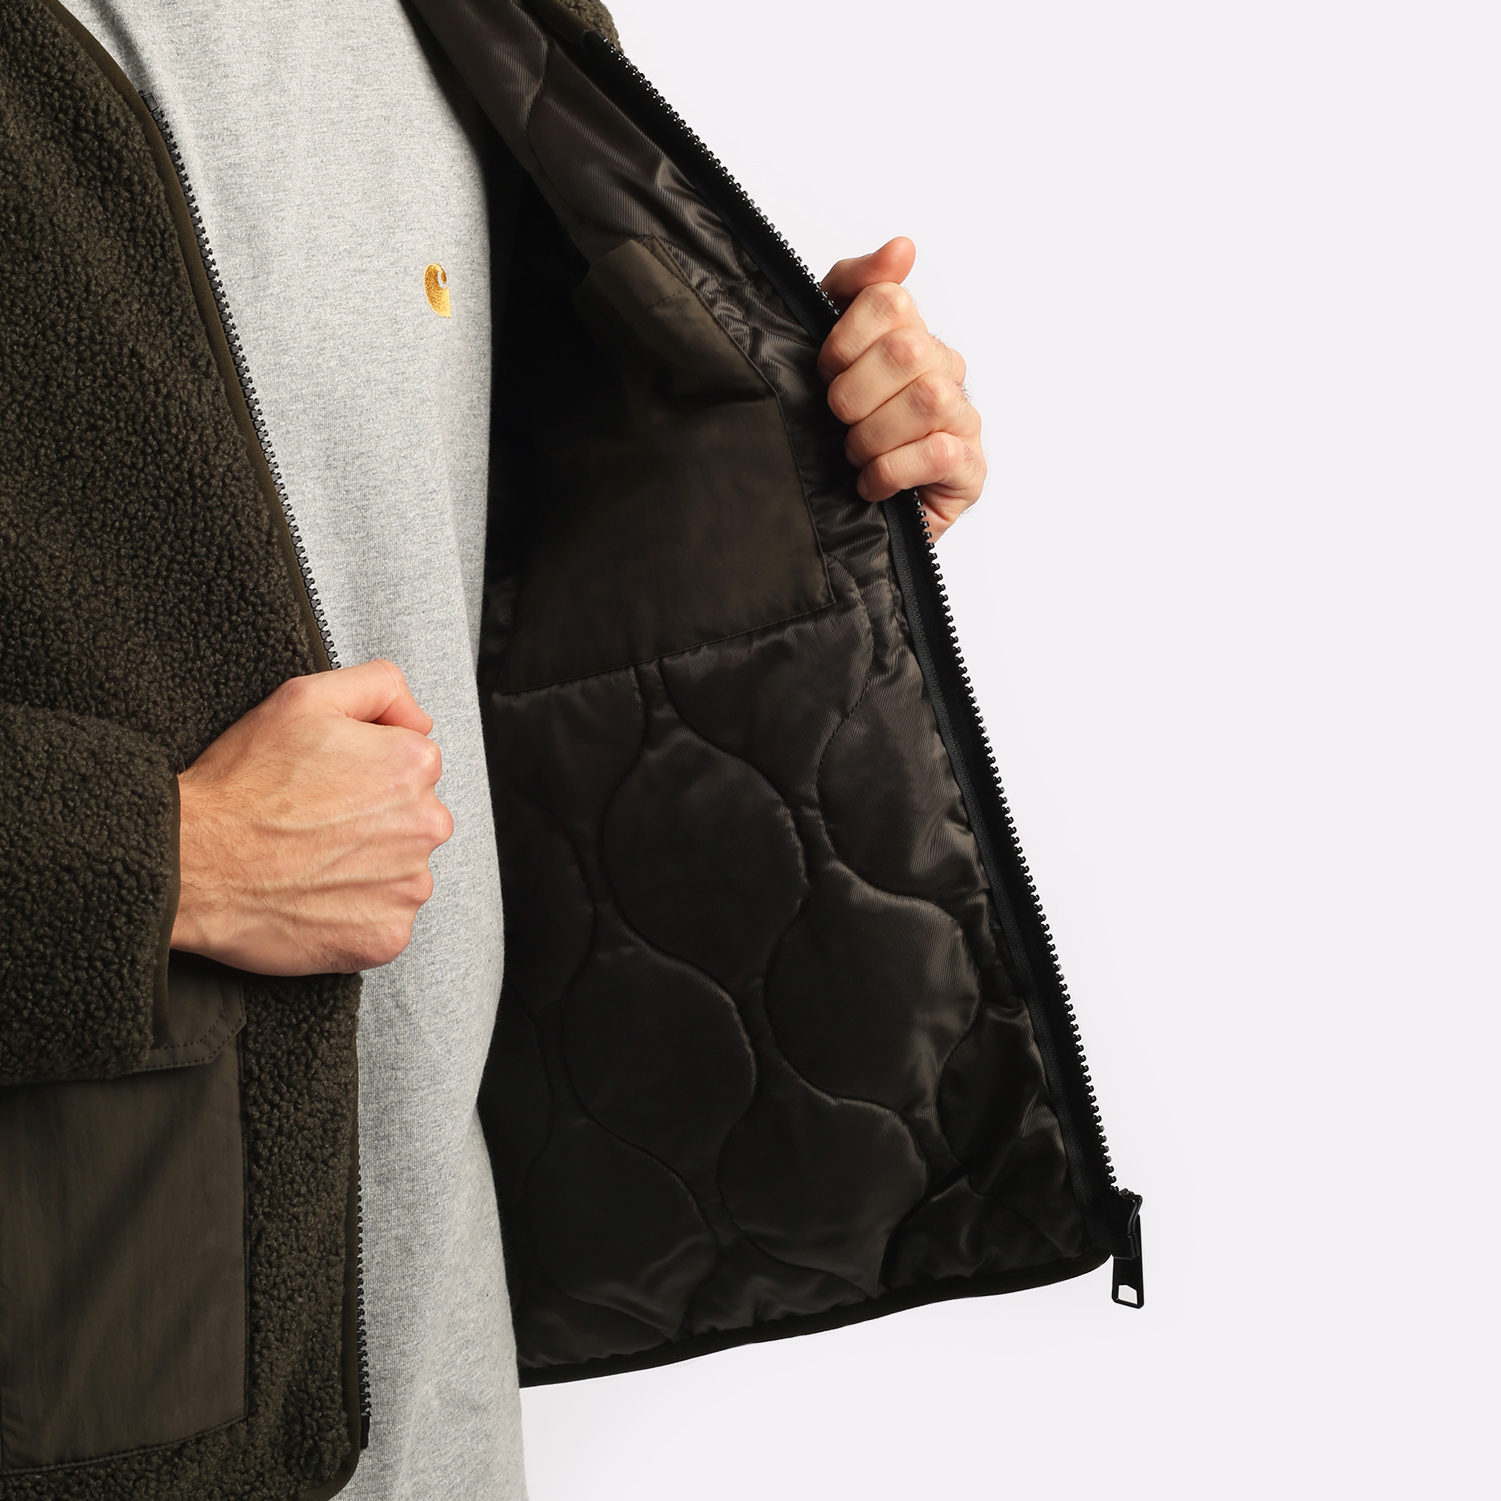 мужская куртка Carhartt WIP Devin Liner  (I032244-cypress)  - цена, описание, фото 5